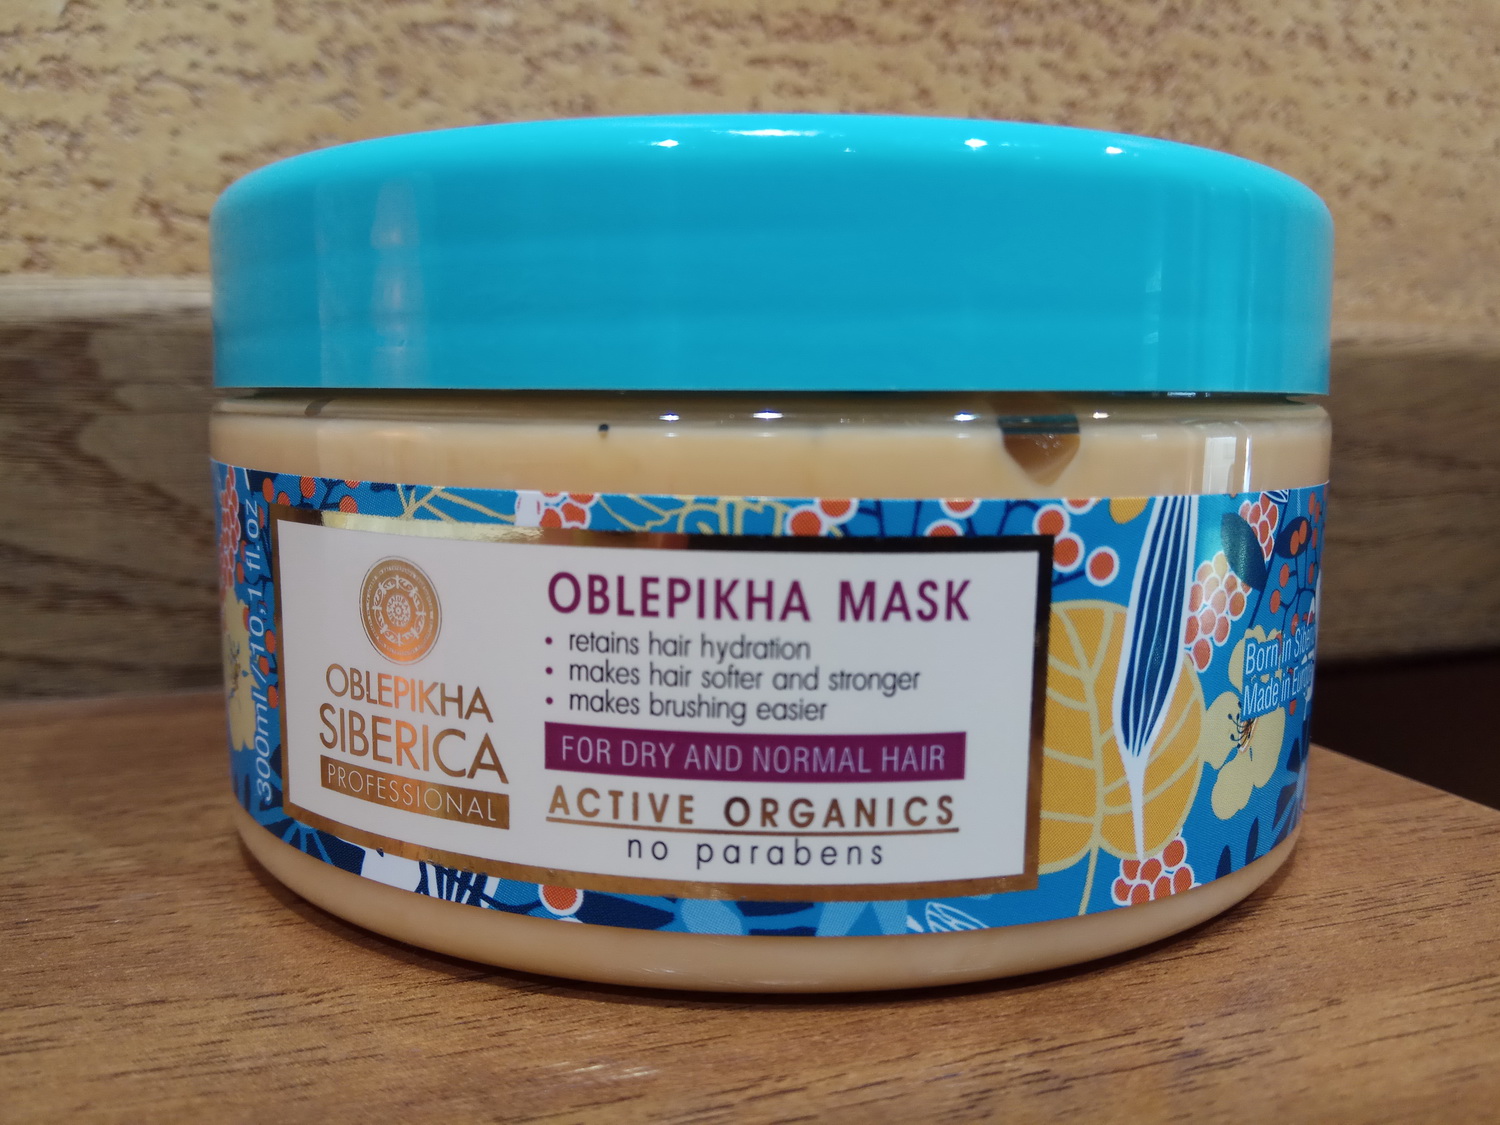 Облепиховая маска "Глубокое увлажнение" для сухих и нормальных волос Натура Сиберика Облепиха, 300 мл.